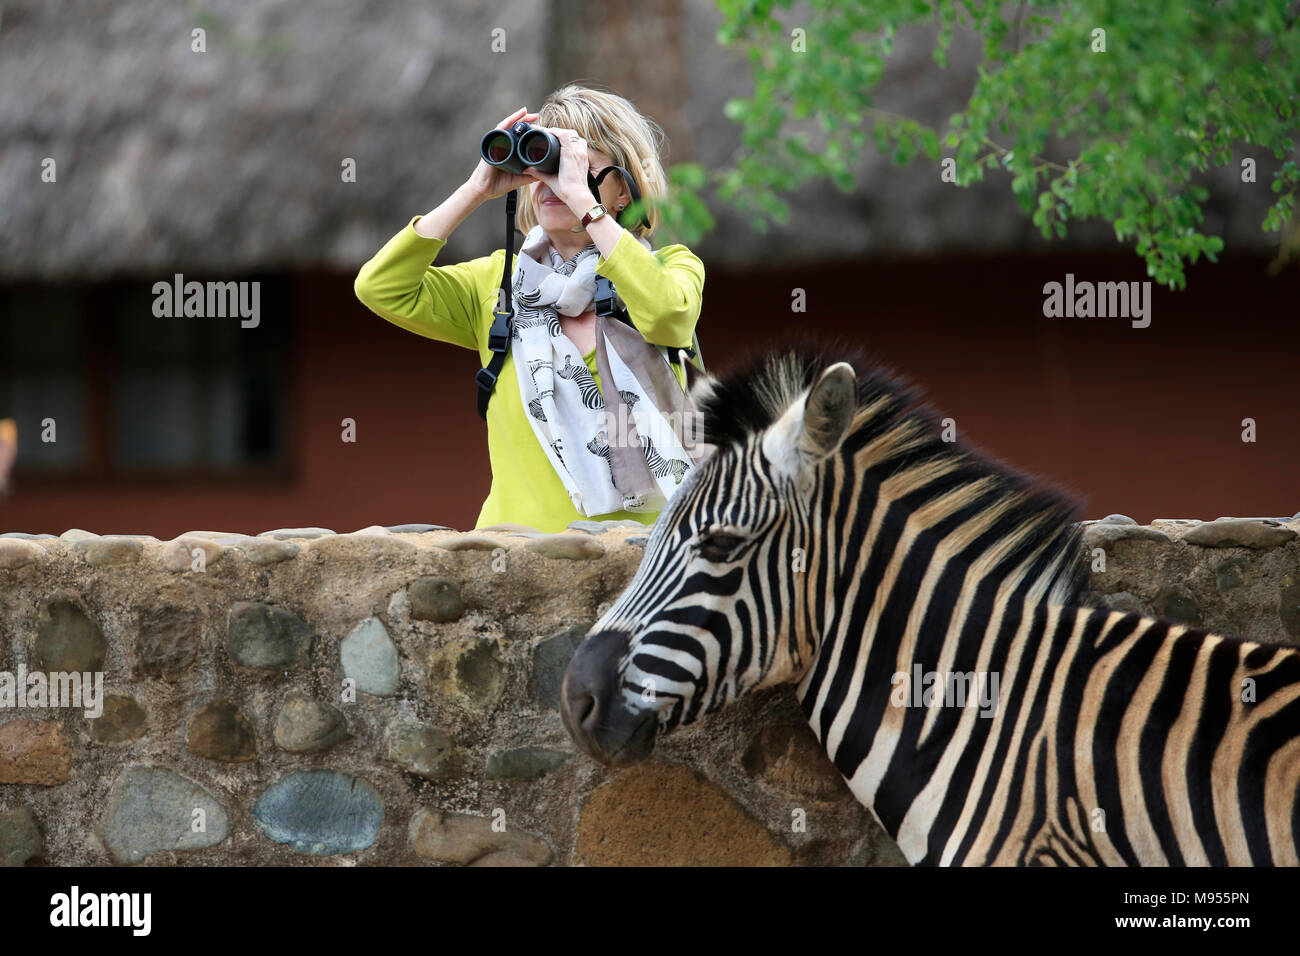 Frau mit Fernglas und trägt einen Schal dekoriert mit Zebras vor einem Zebra Stockfoto